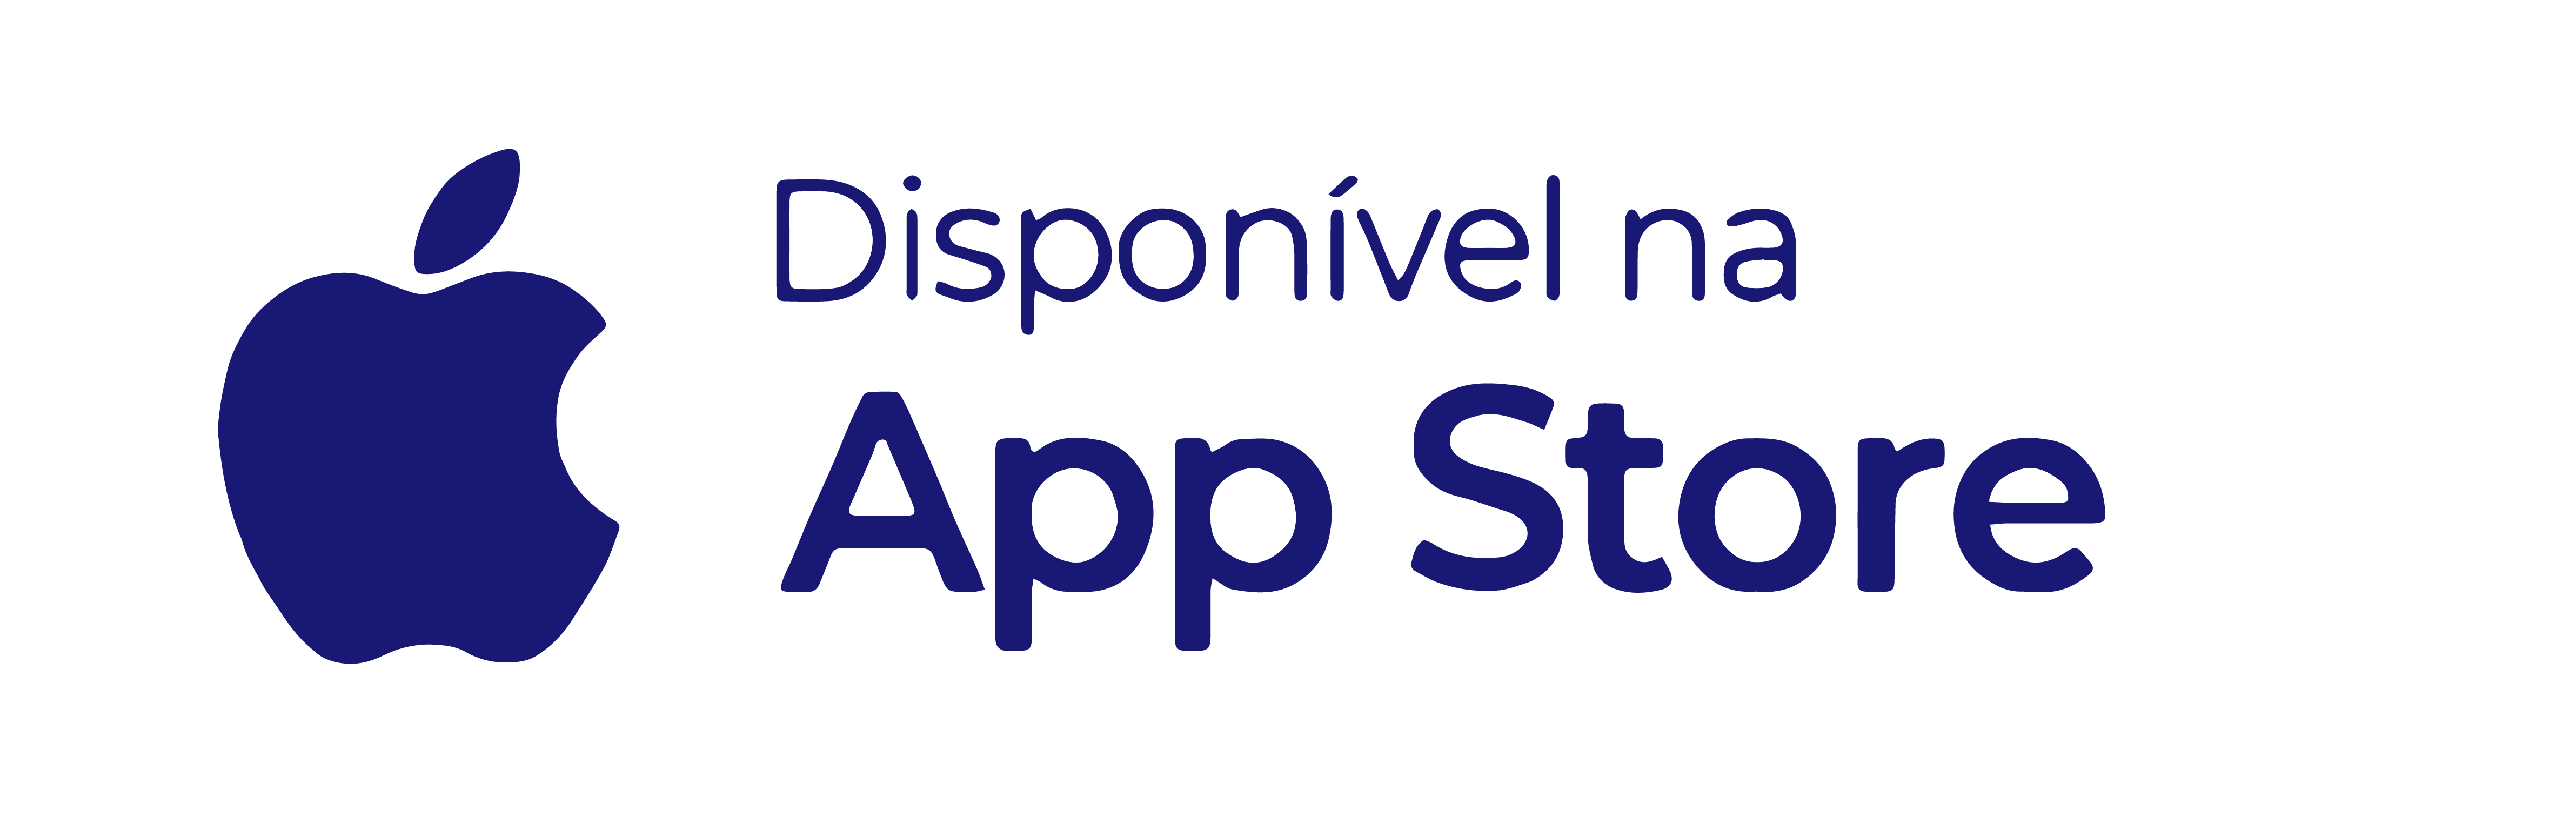 Botão que levará para o app metaDoctors na App Store